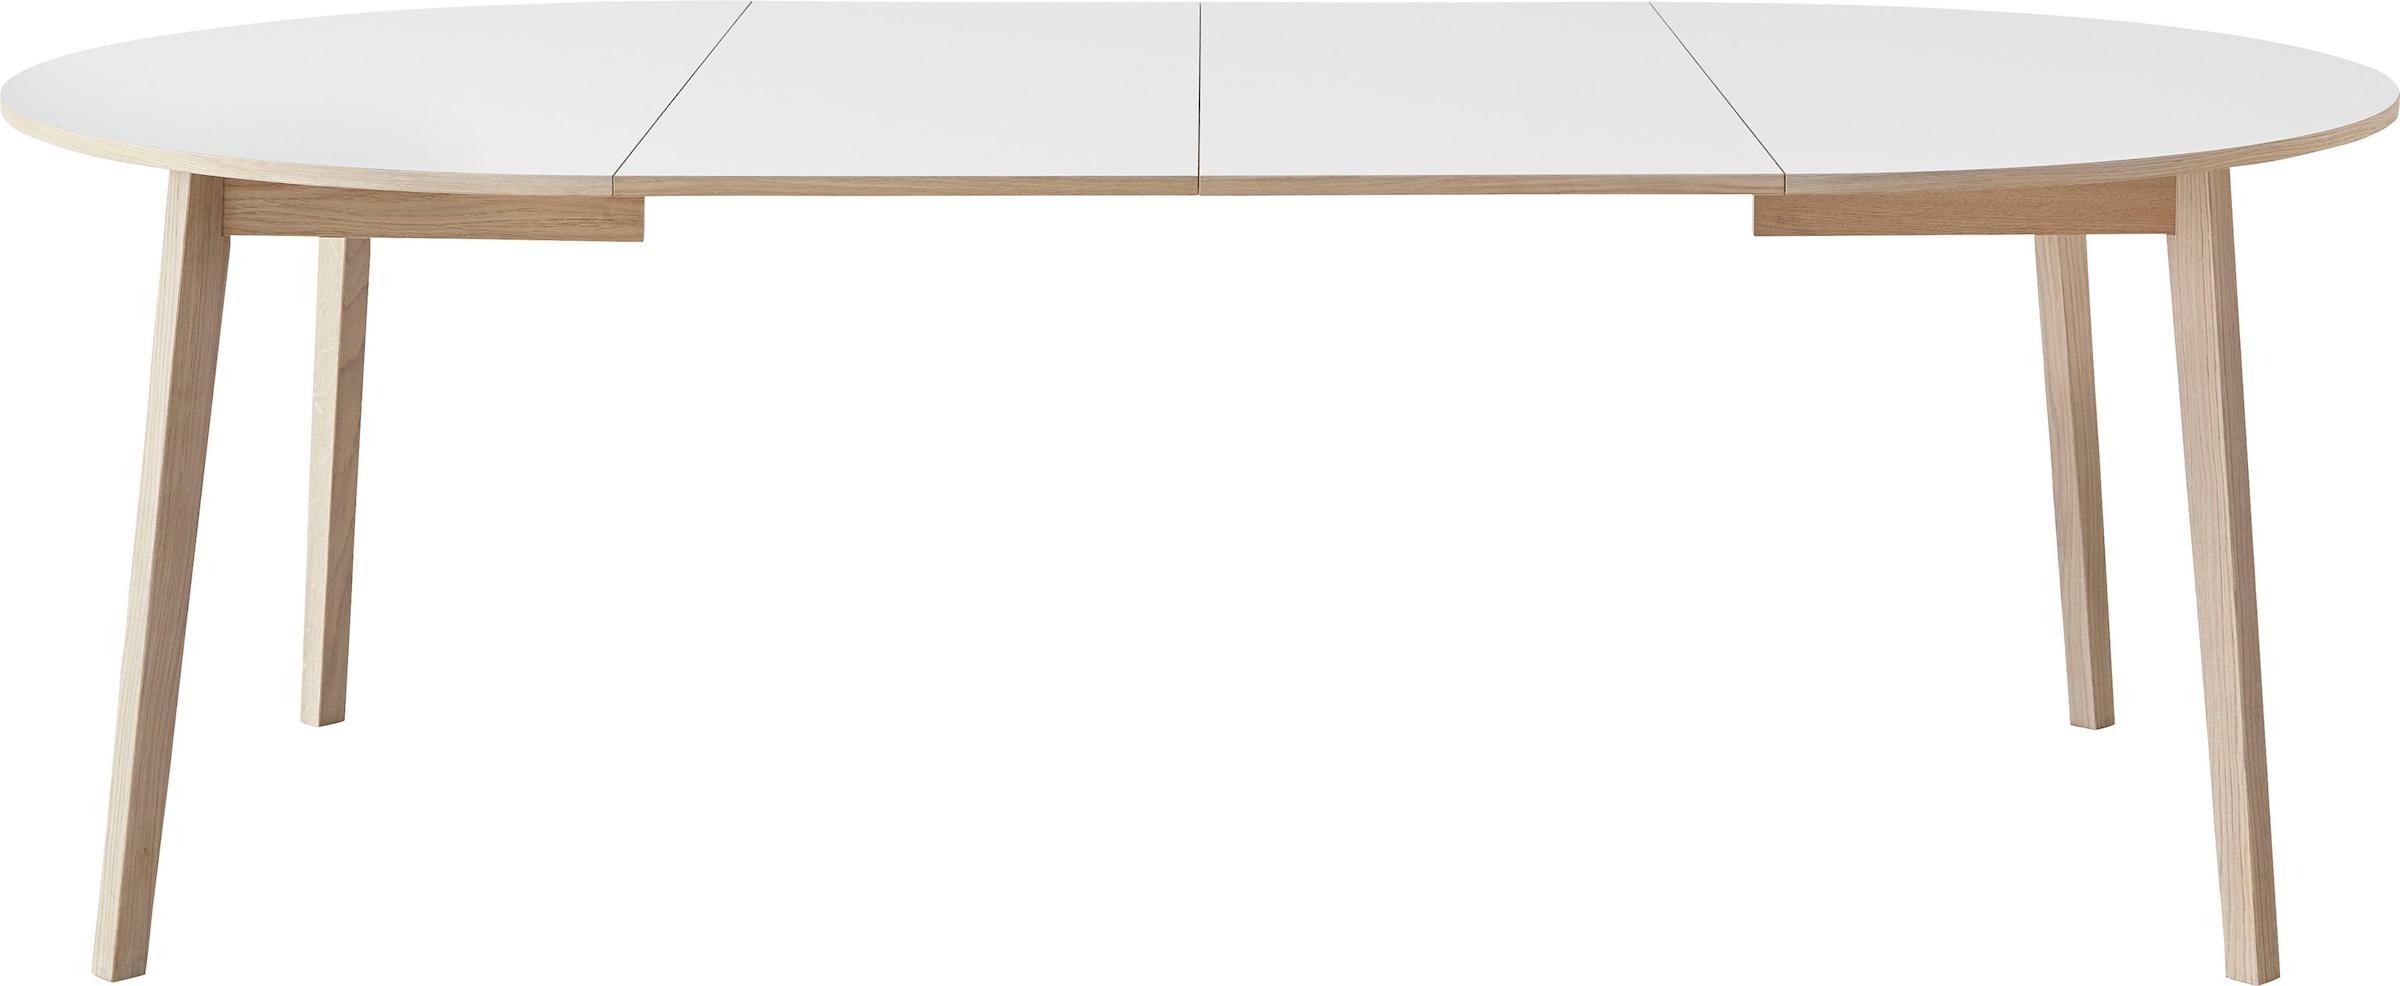 Hammel Furniture Esstisch »Basic Single, ausziehbar, inklusive 2 Einlegeplatten«, Ø130/228 cm, Melamin / Massivholz, stabiler dänische Design Tisch